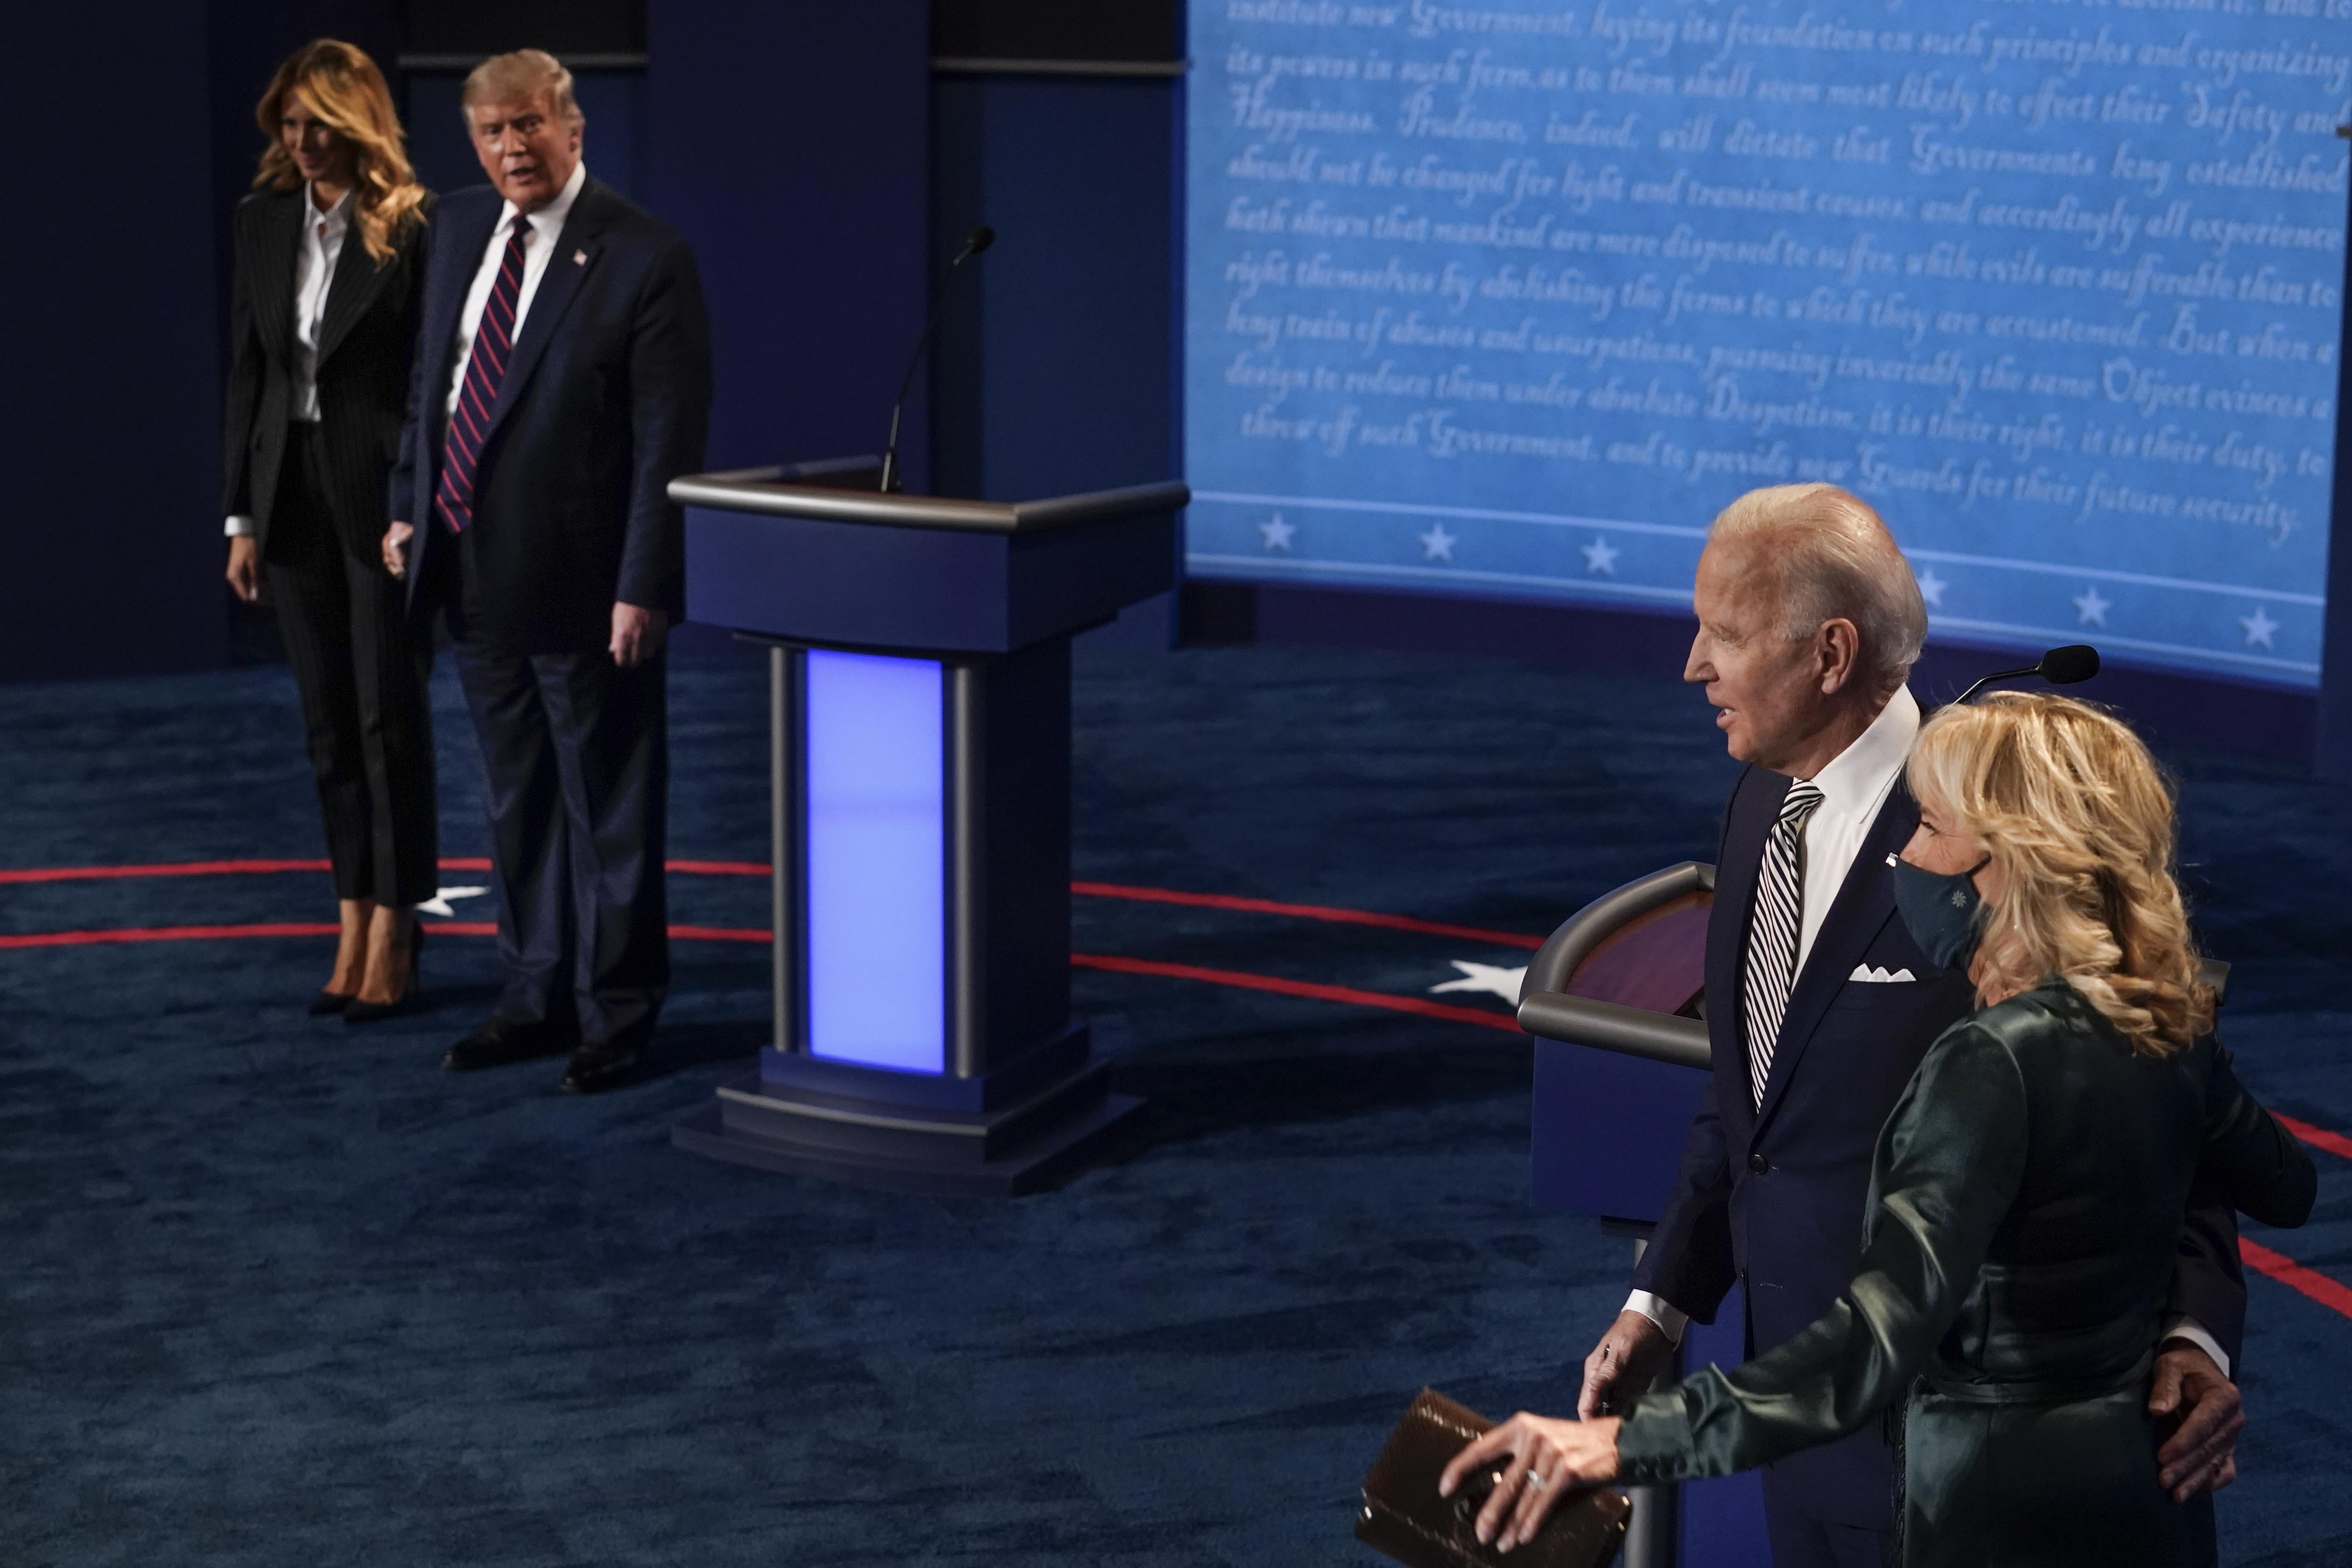 Donald Trump, standing beside Melania, stares at Jill and Joe Biden, standing beside Biden's podium. Jill Biden is the only one wearing a mask.